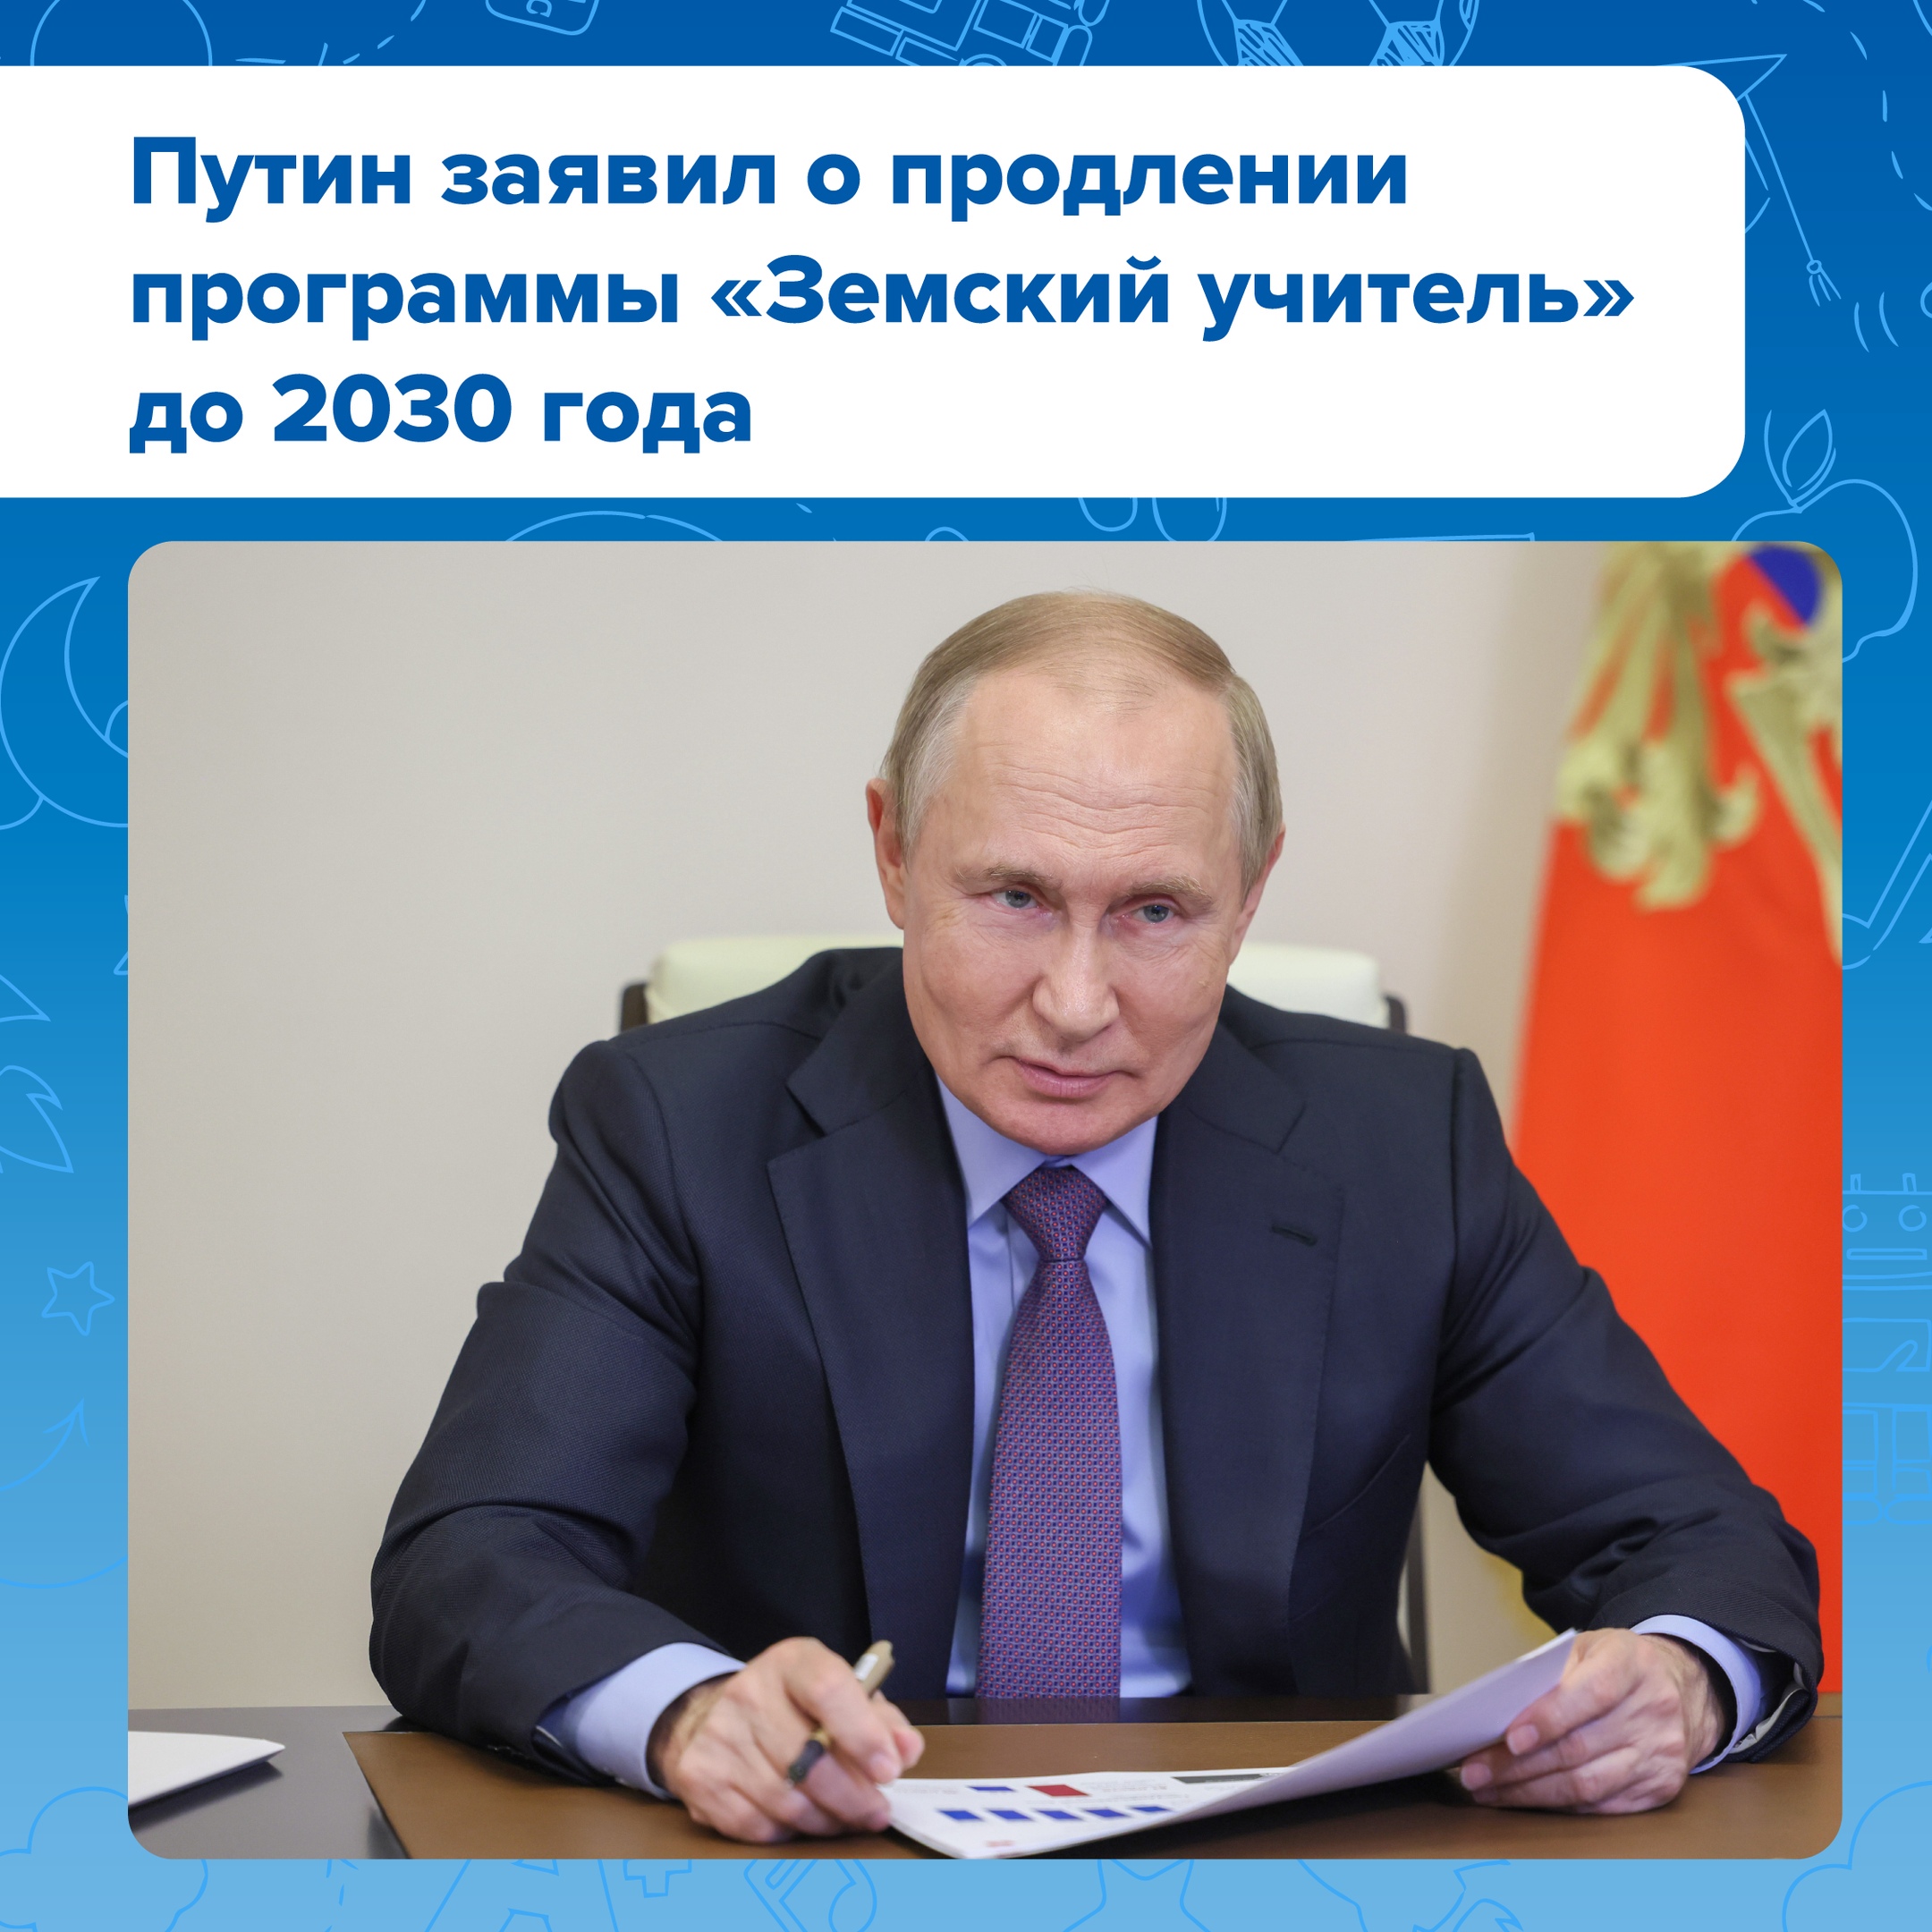 Владимир Путин сообщил о продлении программы «Земский учитель» до 2030 года..